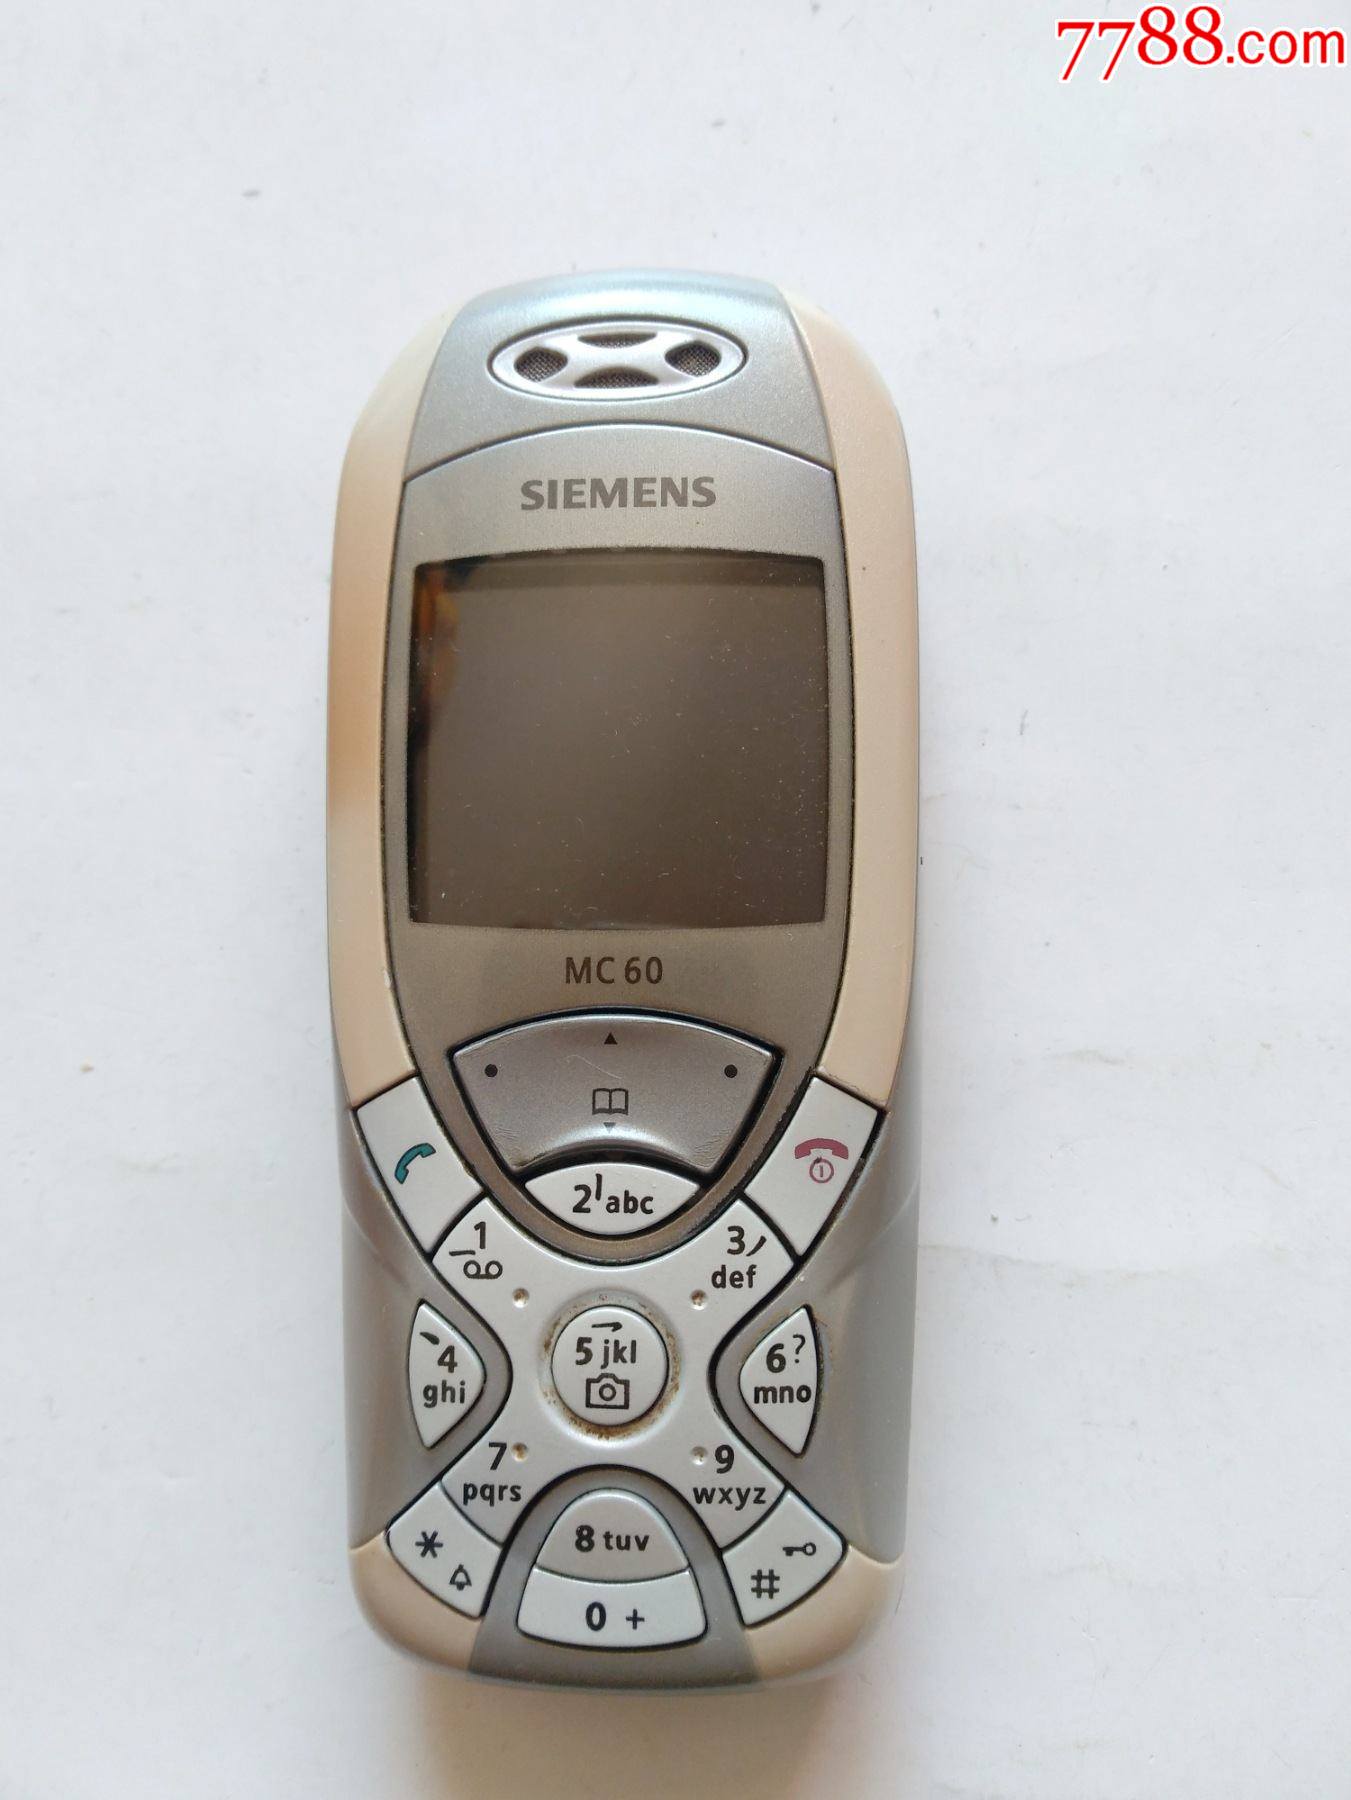 老电话西门子mc60非常稀少漂亮外观完好点图可放大